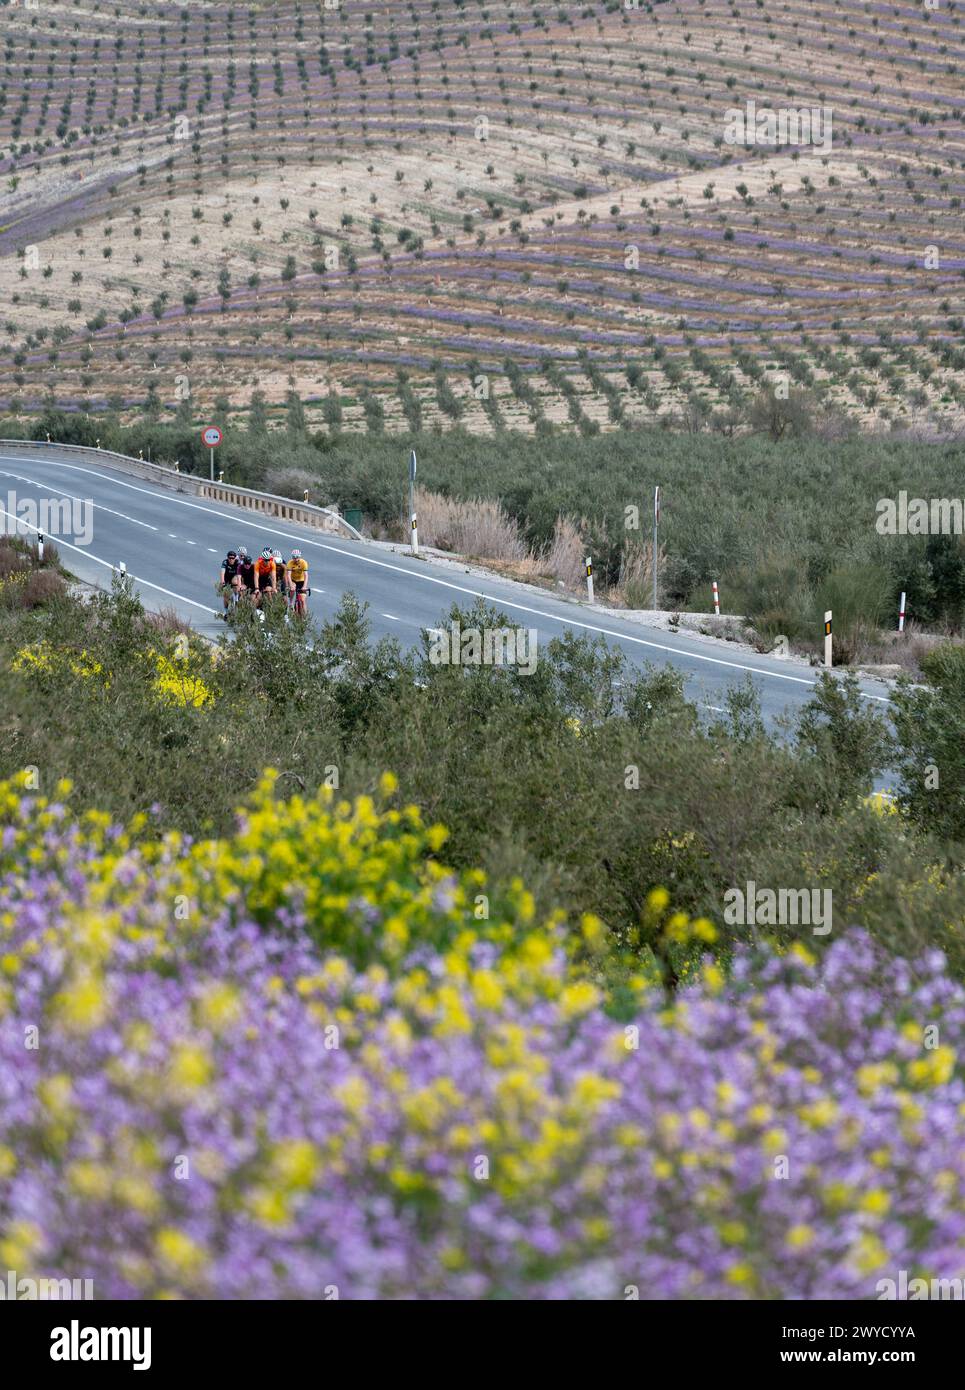 Gruppe von Radfahrern, die im Frühjahr entlang einer Regionalstraße in Andalusien zwischen Blumen und Olivenbäumen fahren Stockfoto